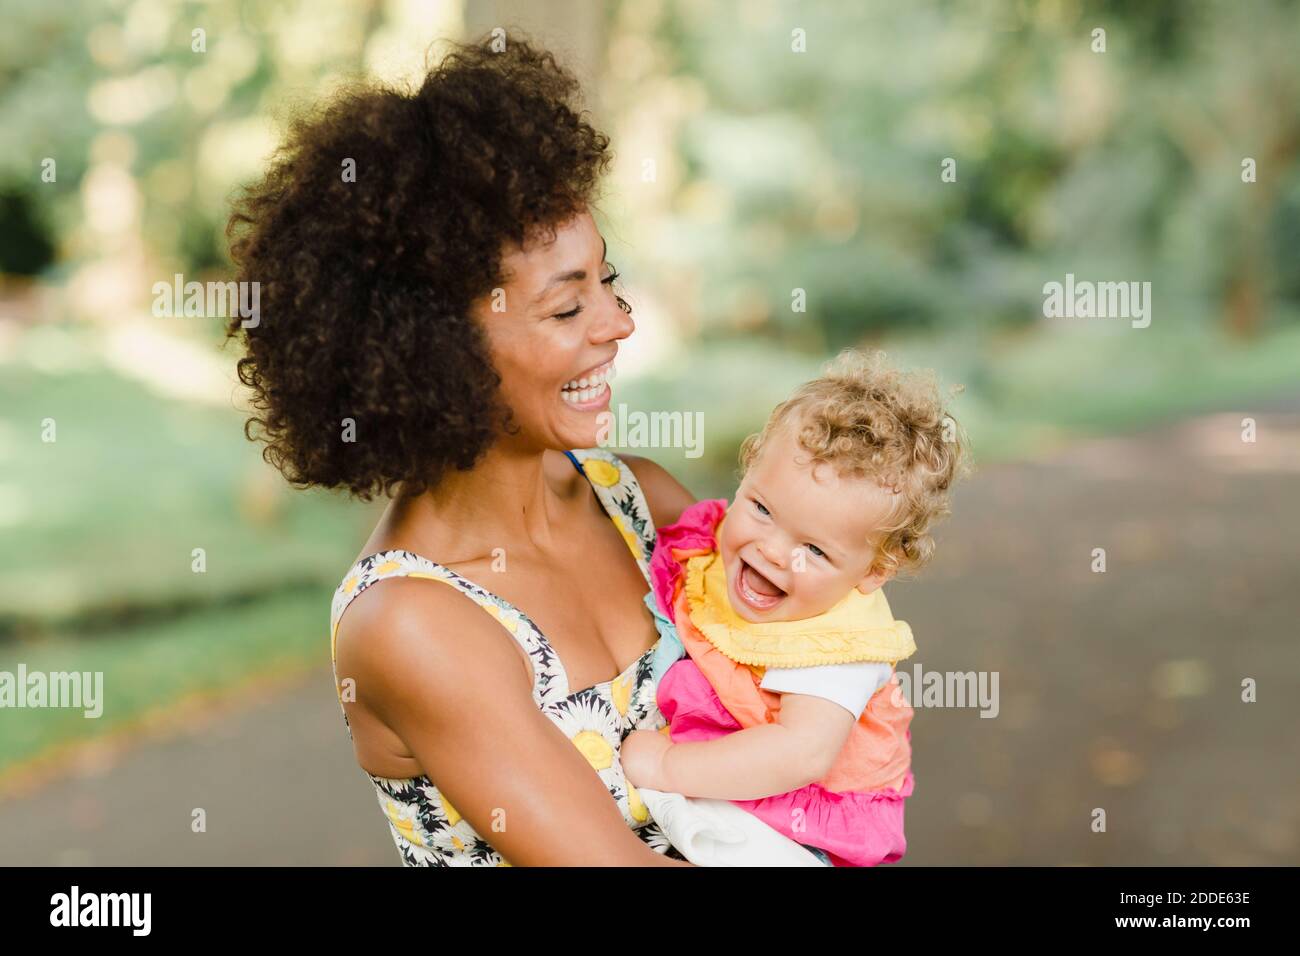 Fröhliche Mutter hält Baby, während sie im Park steht Stockfoto